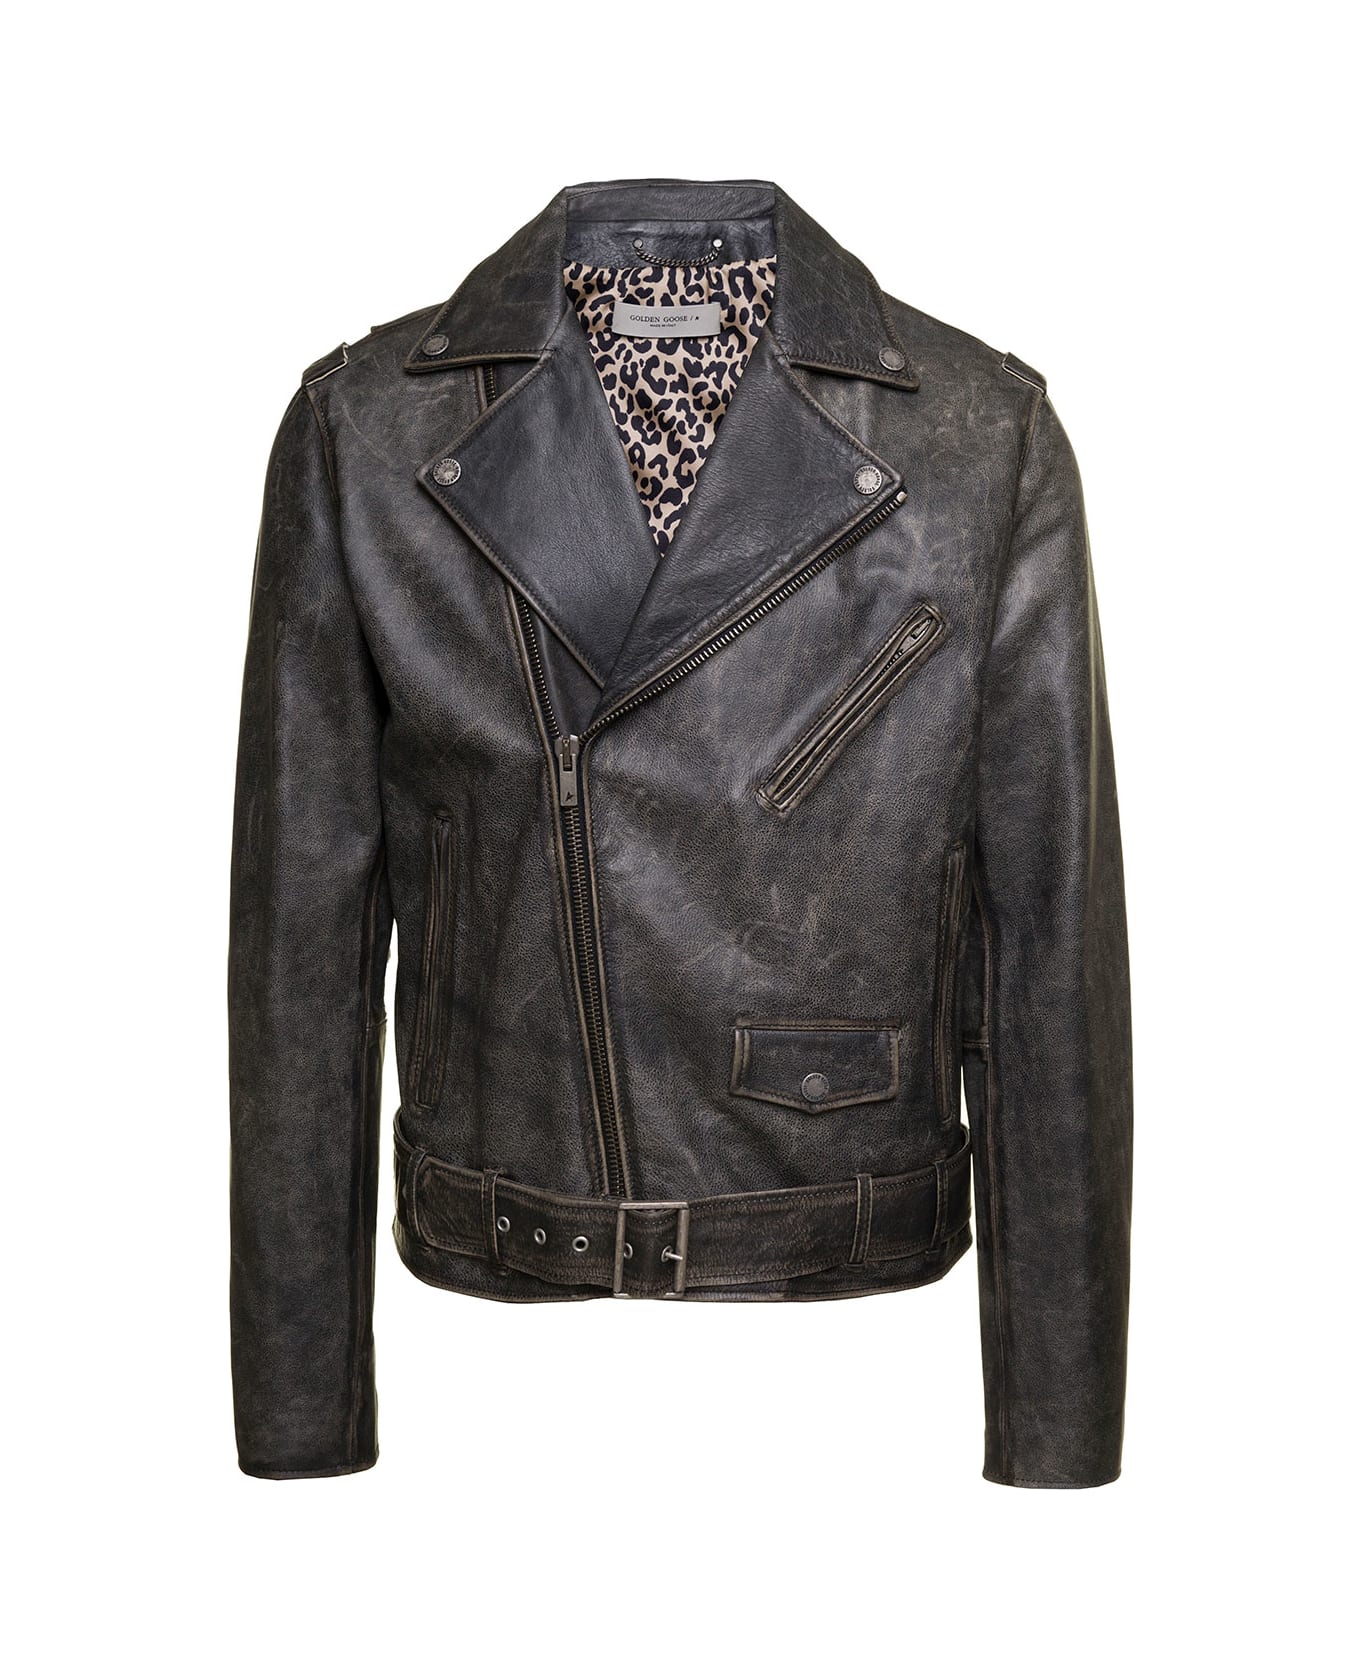 Golden Goose Black Biker Jacket With Leopard Lining Leather Man - Black